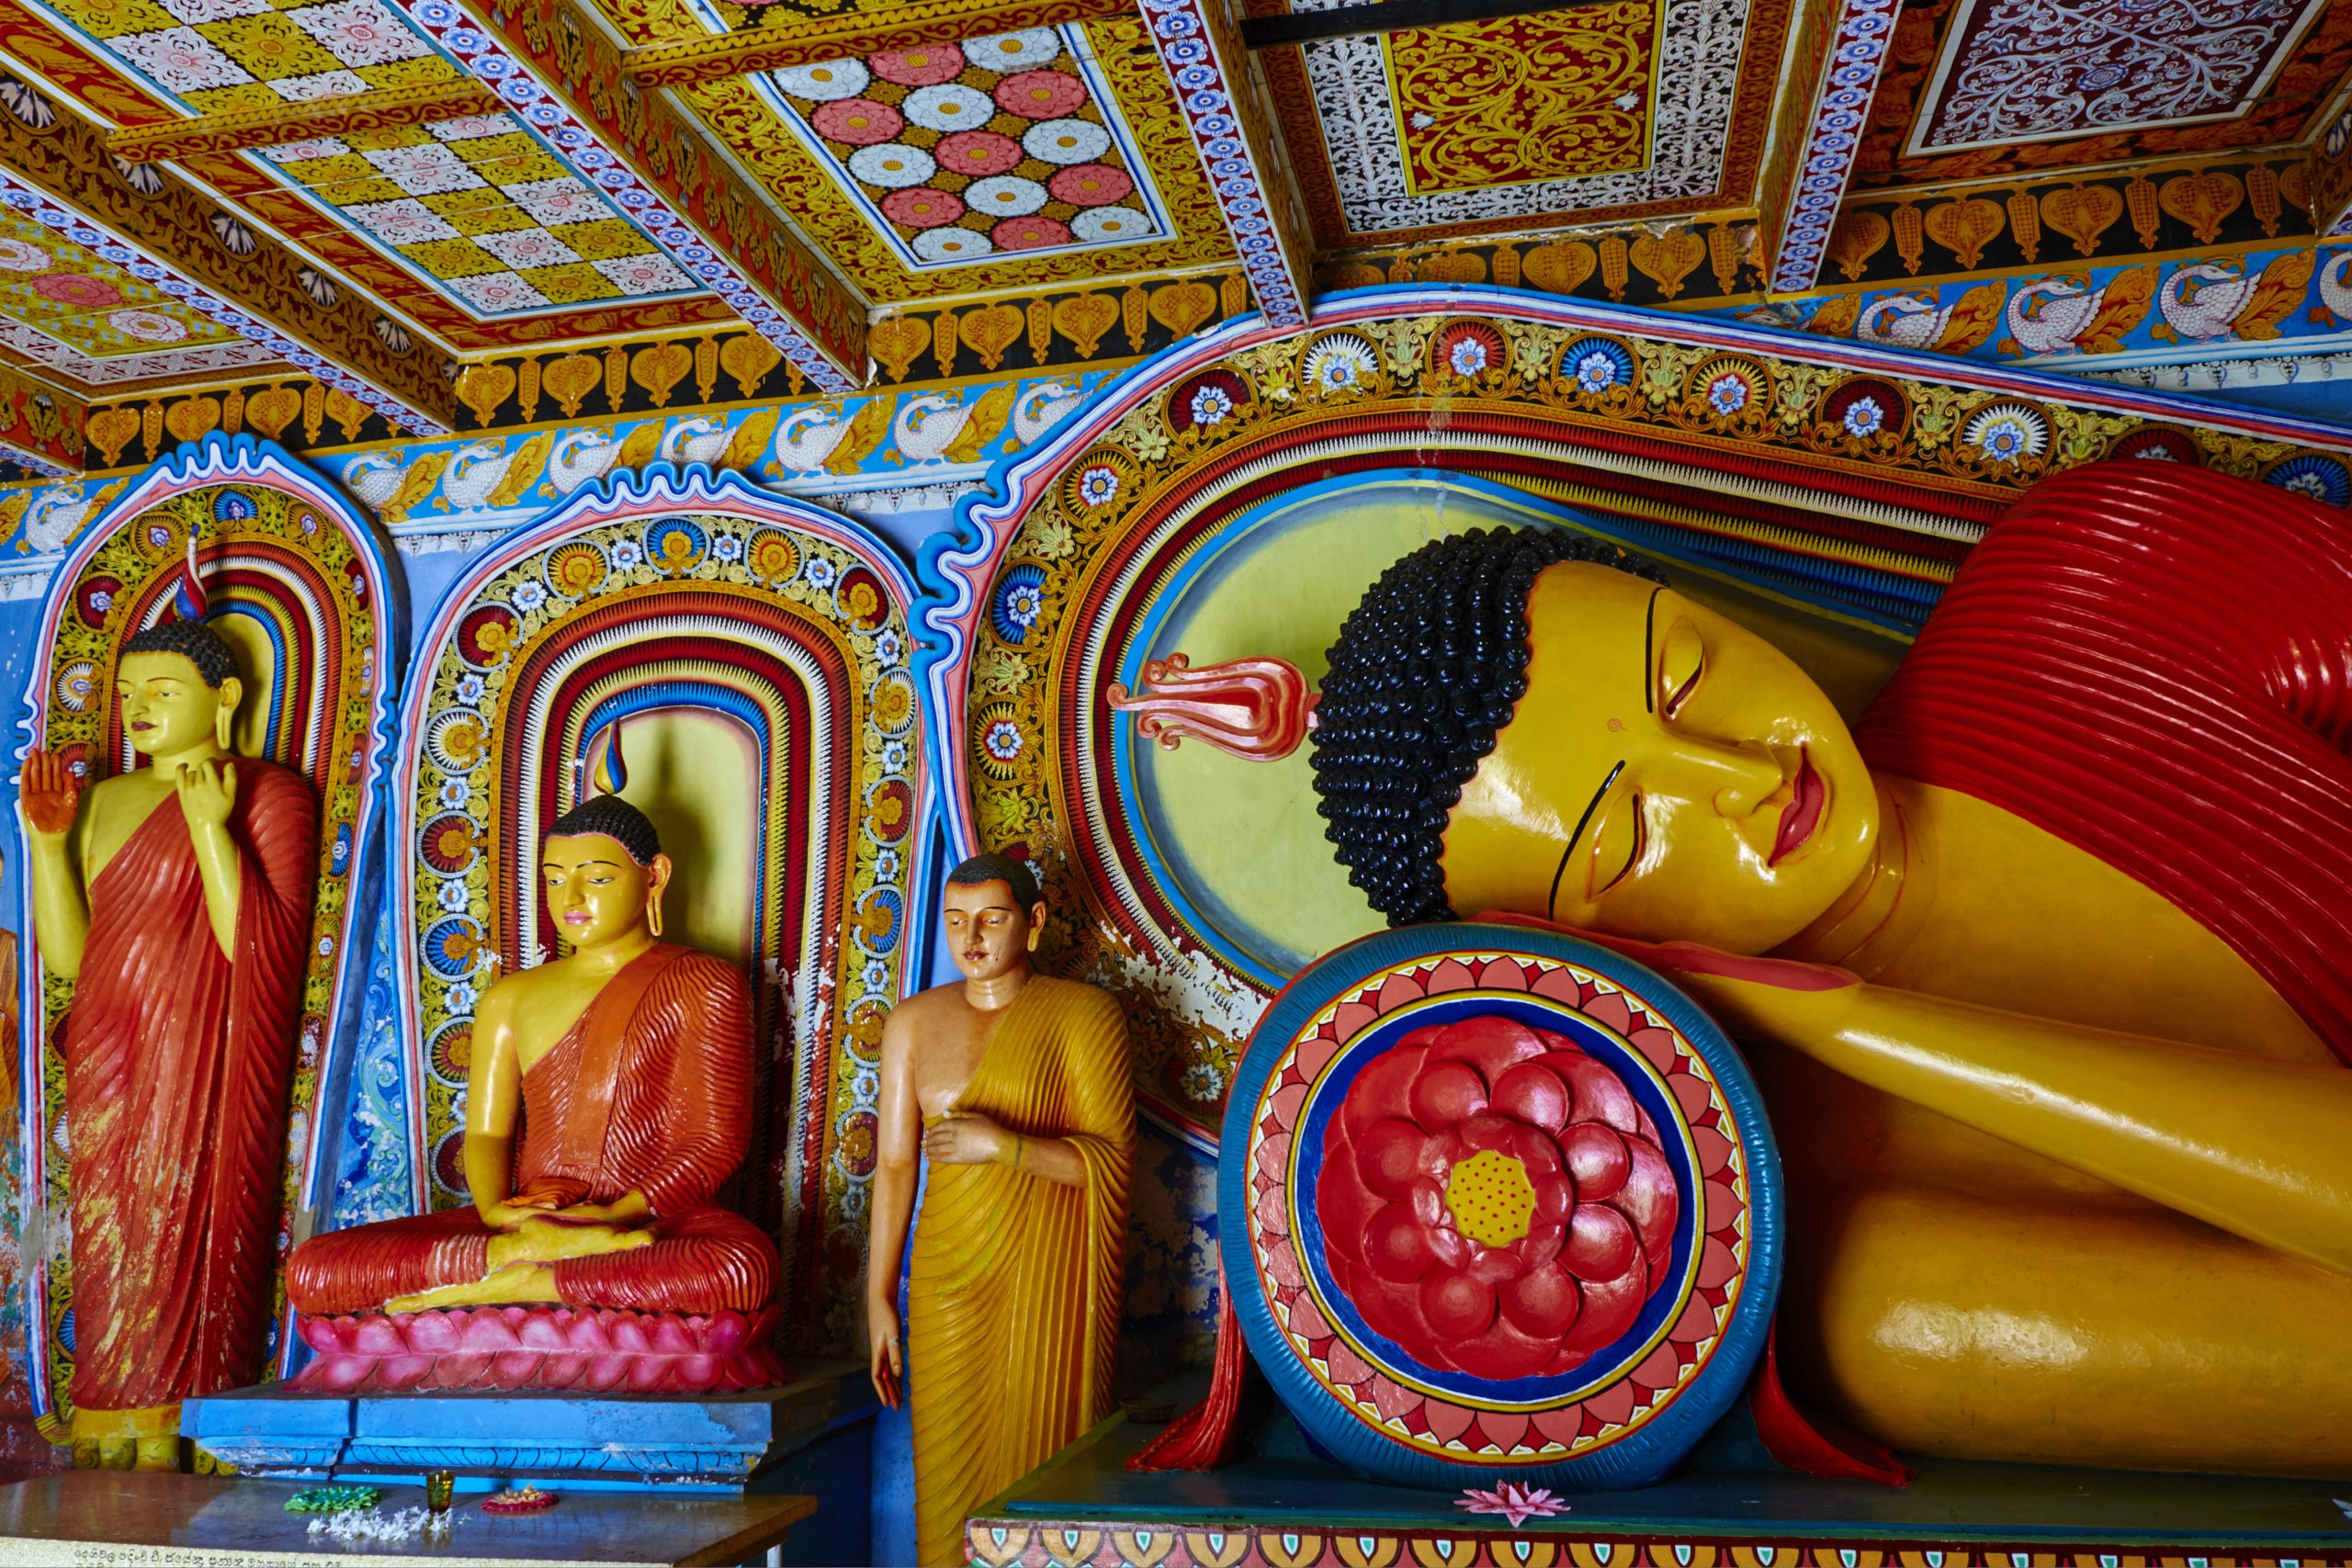 Sri Lanka, Anuradhapura, Isurumuniya Vihara temple